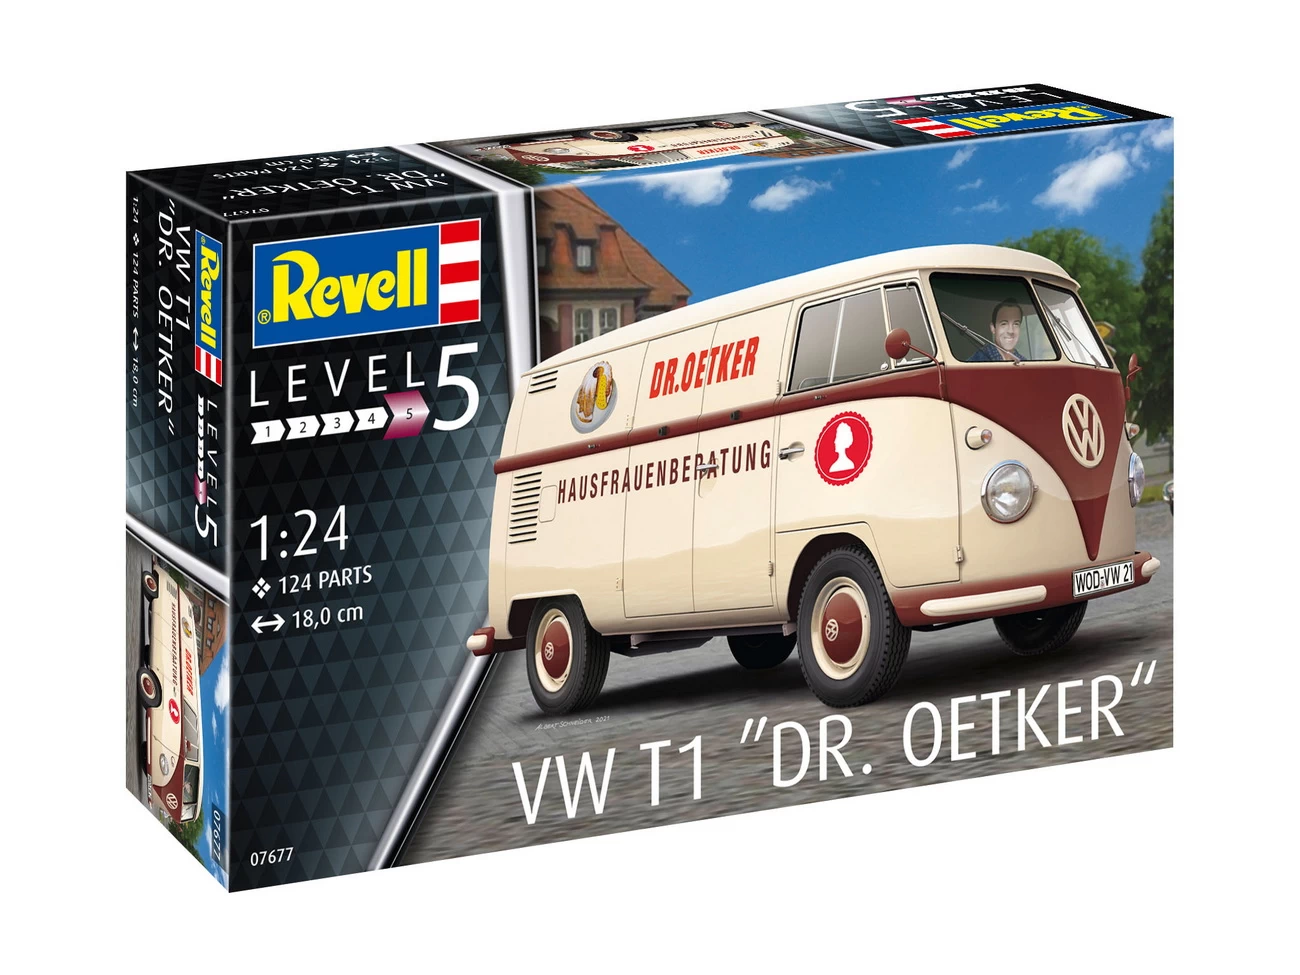 Revell 07677 - VW T1 Dr. Oetker - Lieferwagen Modell